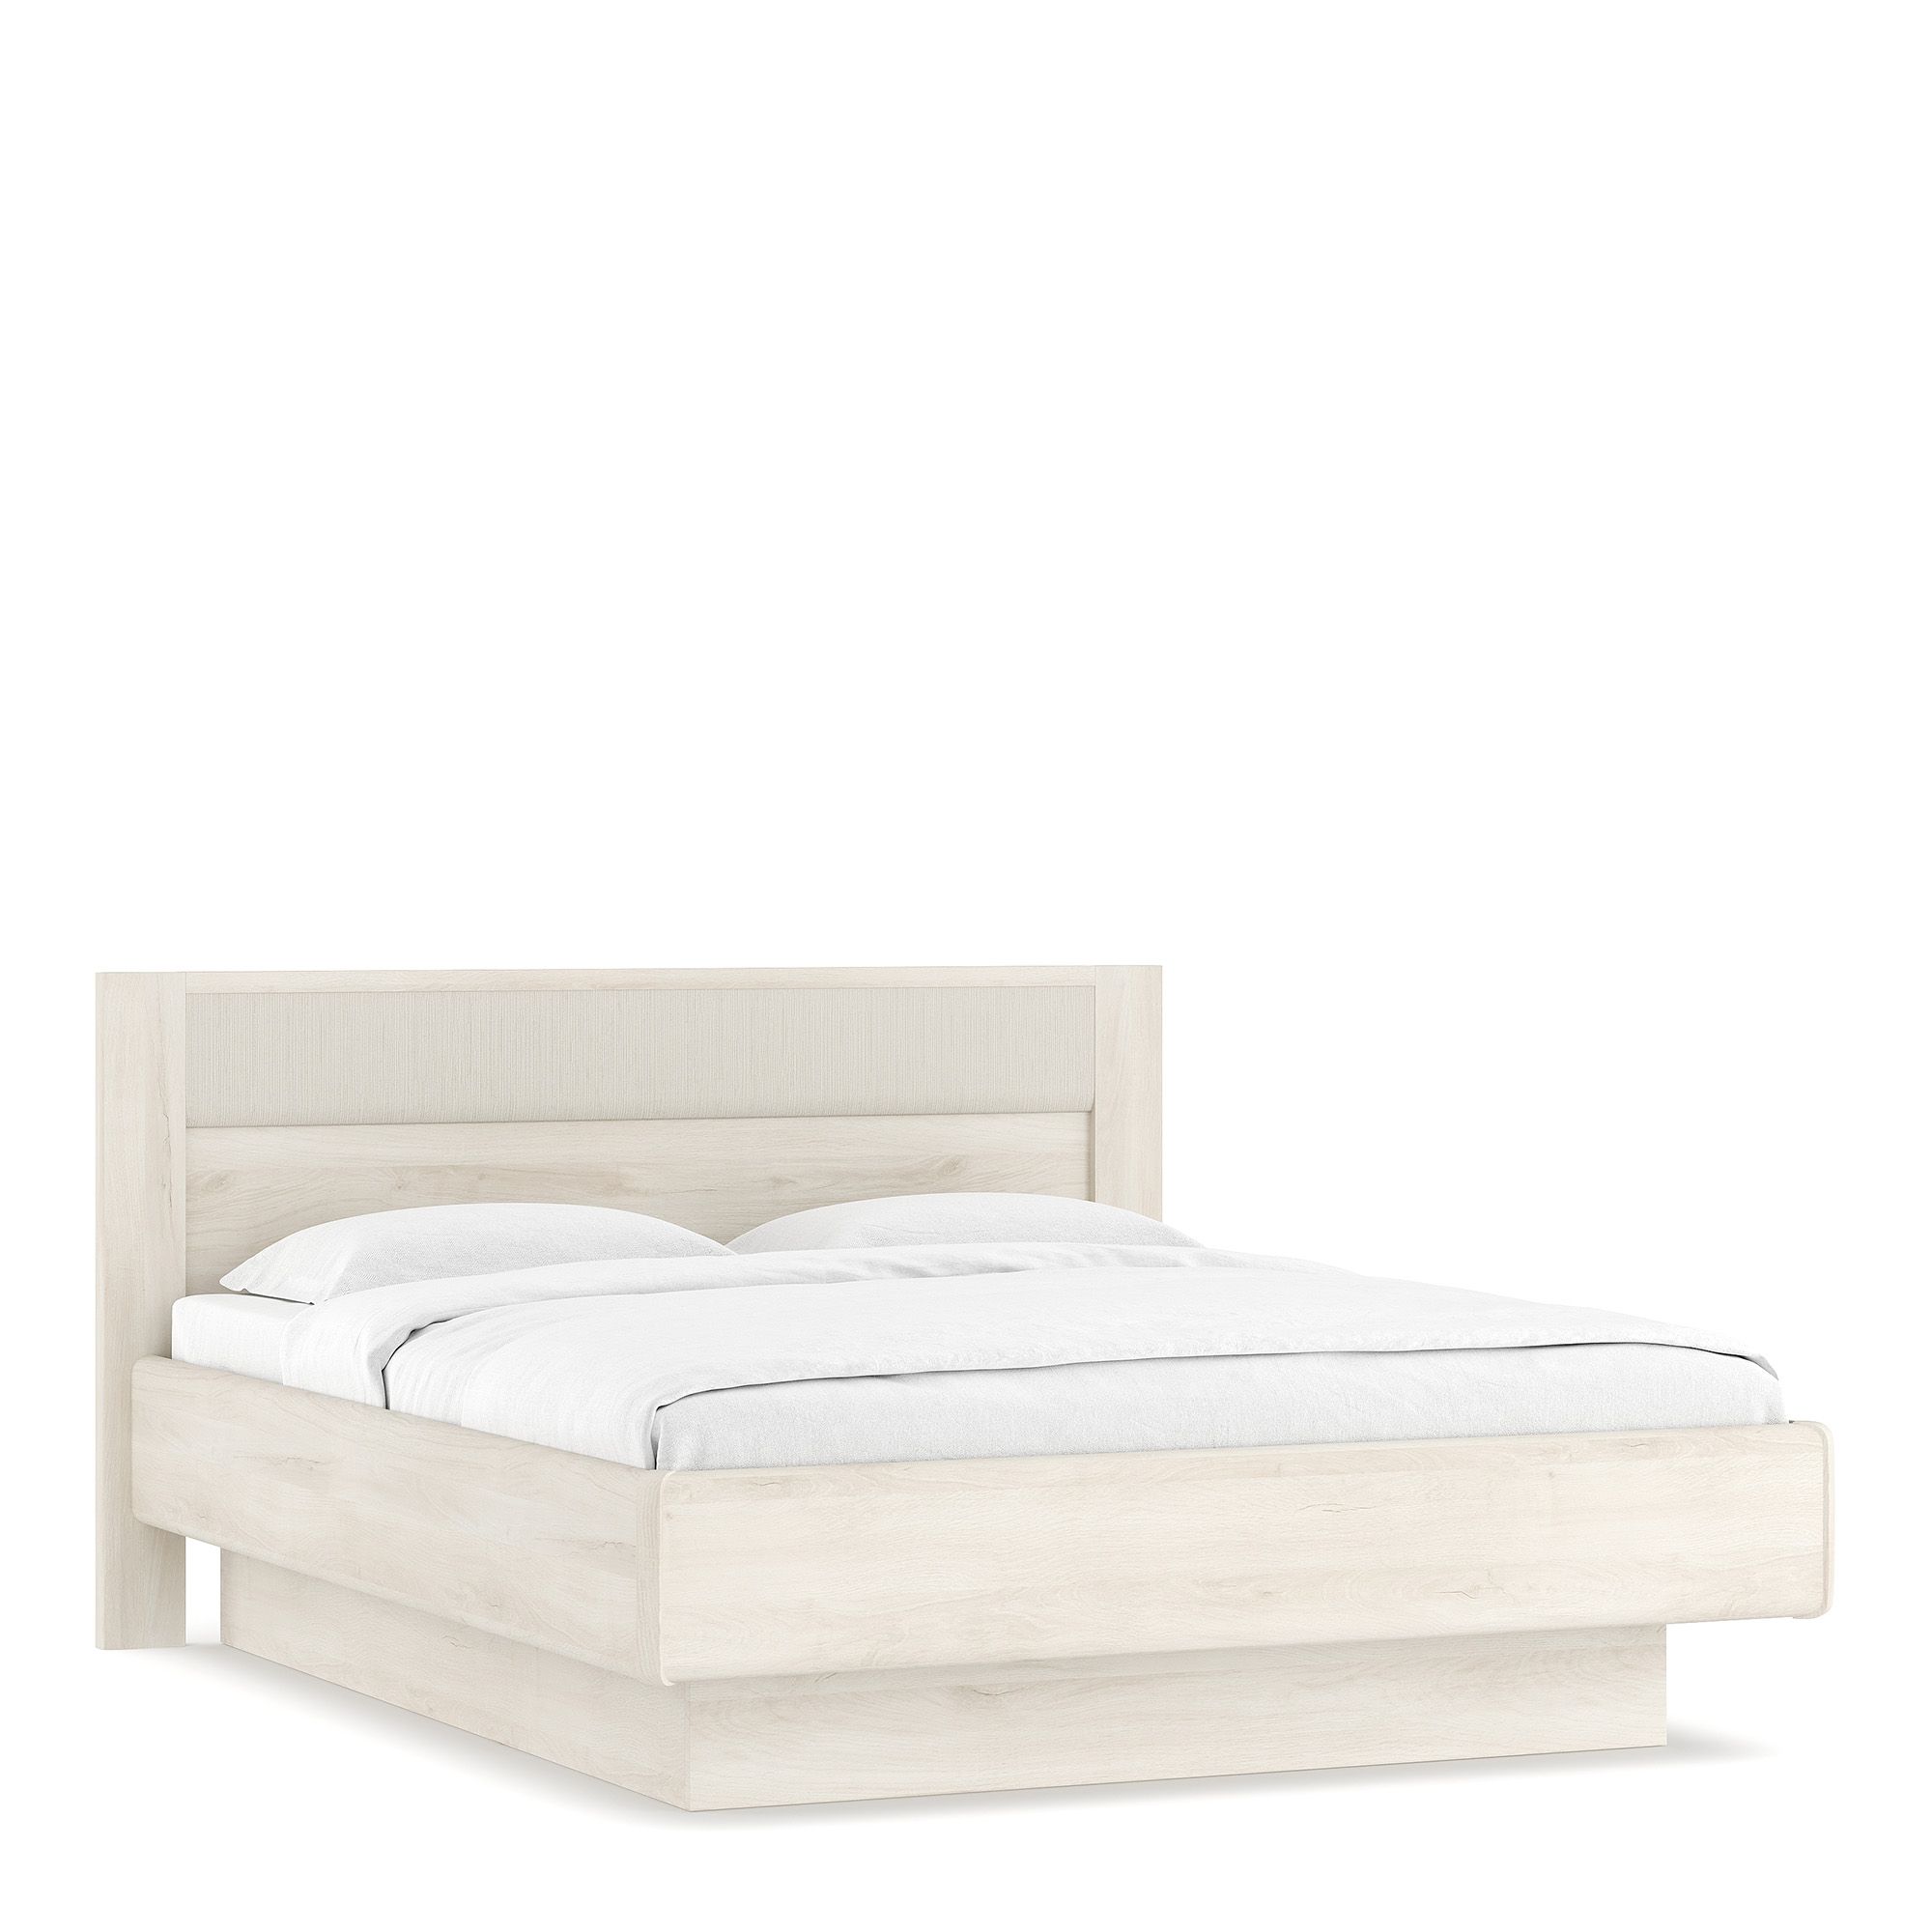 Кровать с подъемным механизмом elegante le4250.2